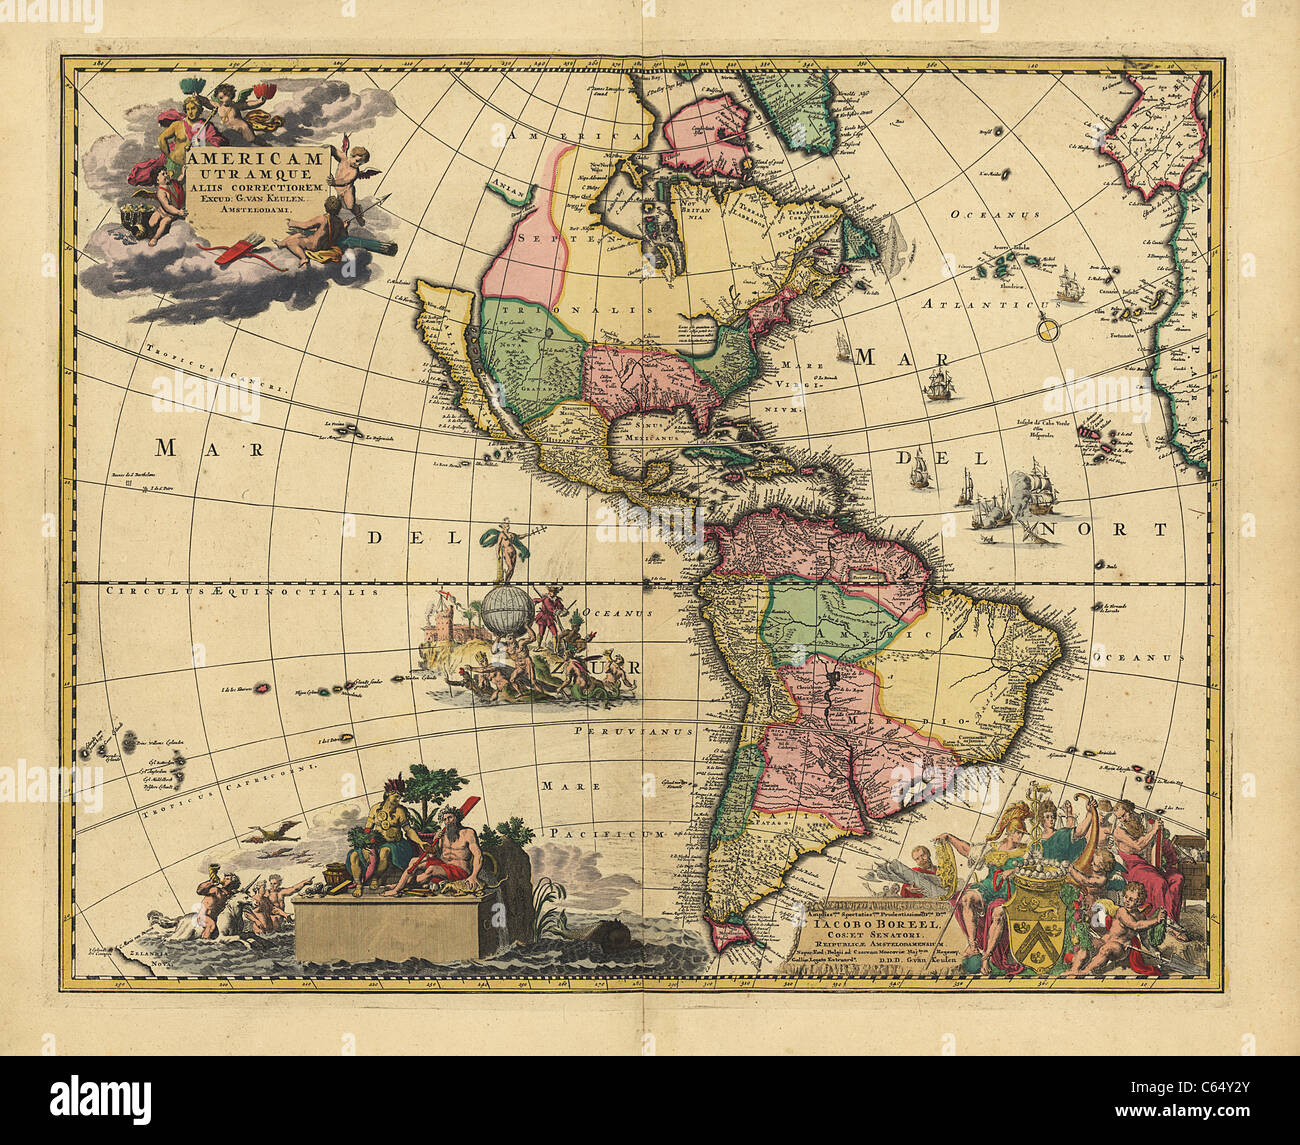 Americam Utramque, 1700 Karte von Amerika (Nordamerika, Mittelamerika, Südamerika) - Klassiker Antiquariatskarte von Vankeulen Stockfoto